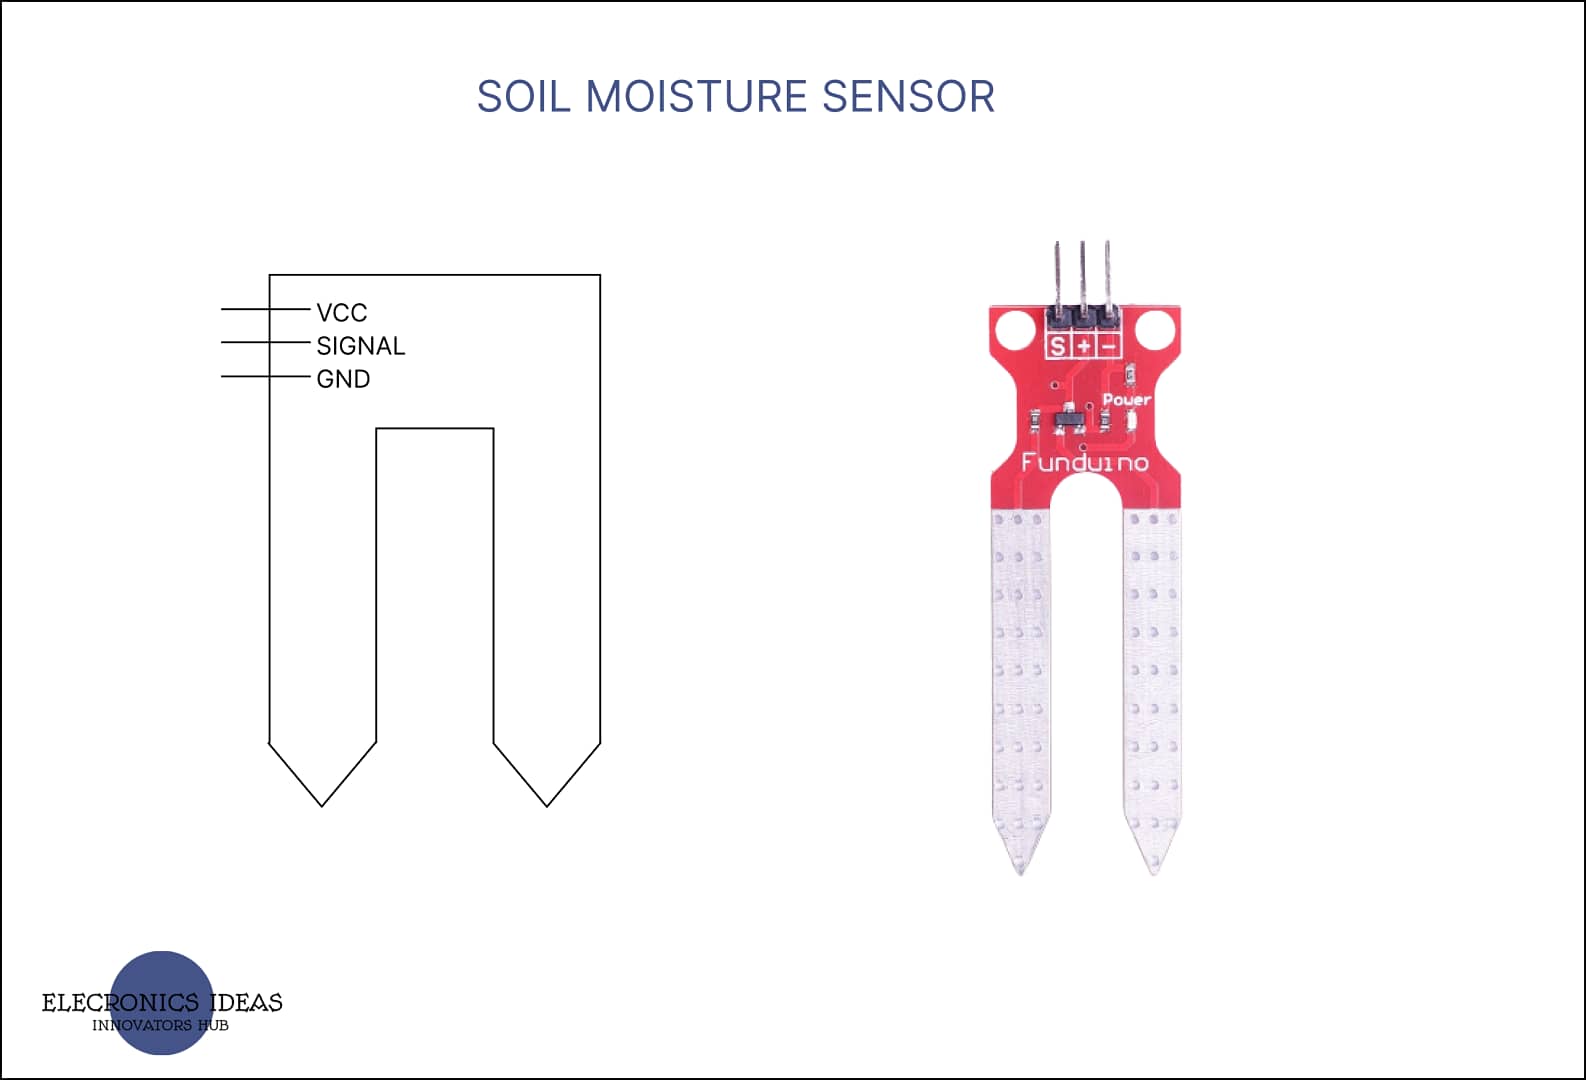 Soil moisture sensors